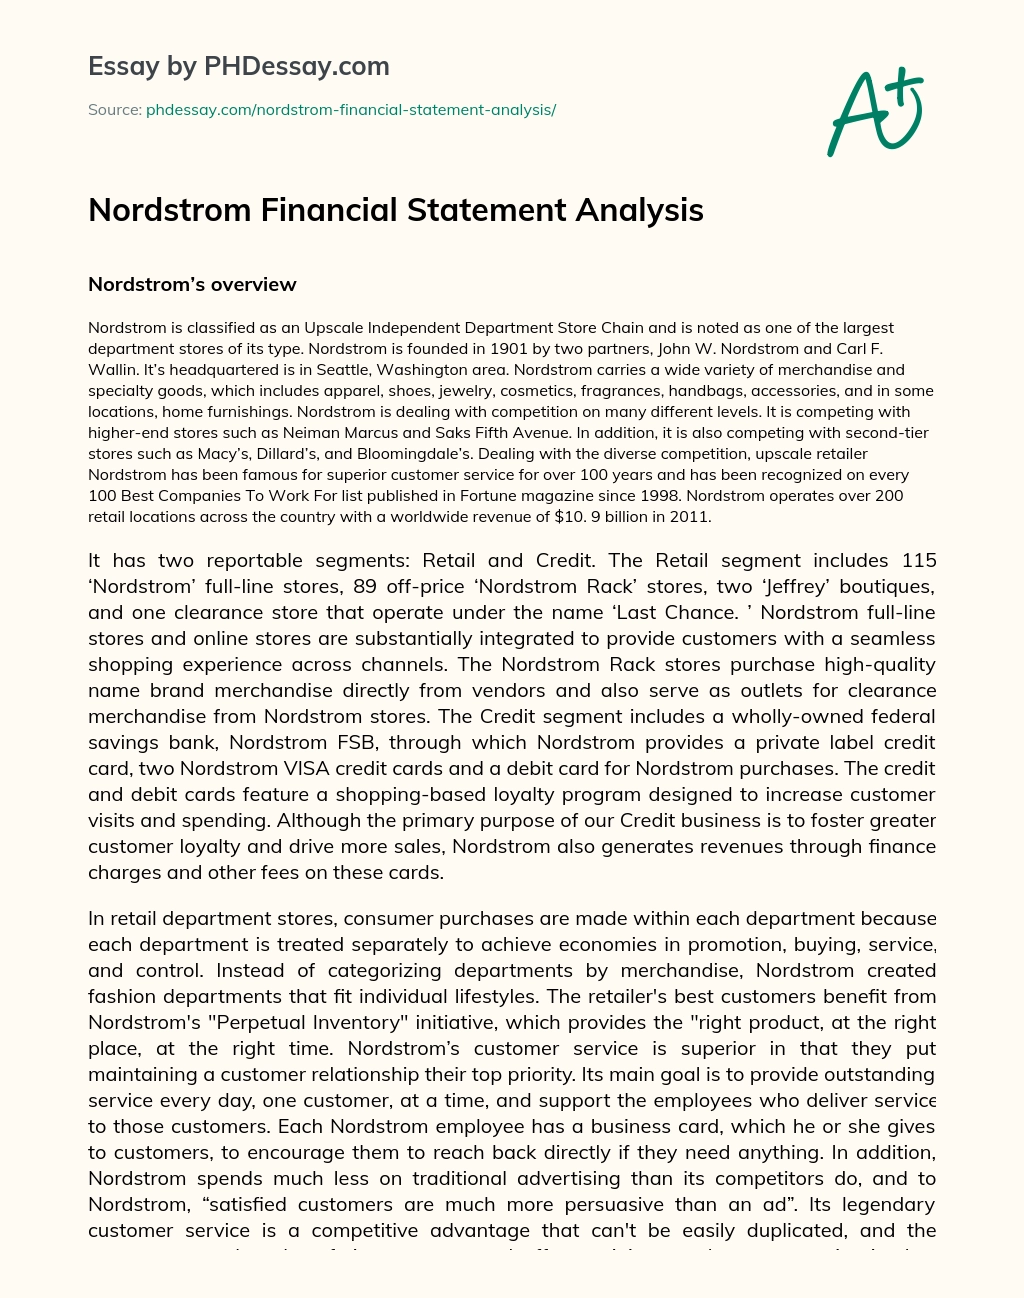 Nordstrom Financial Statement Analysis essay